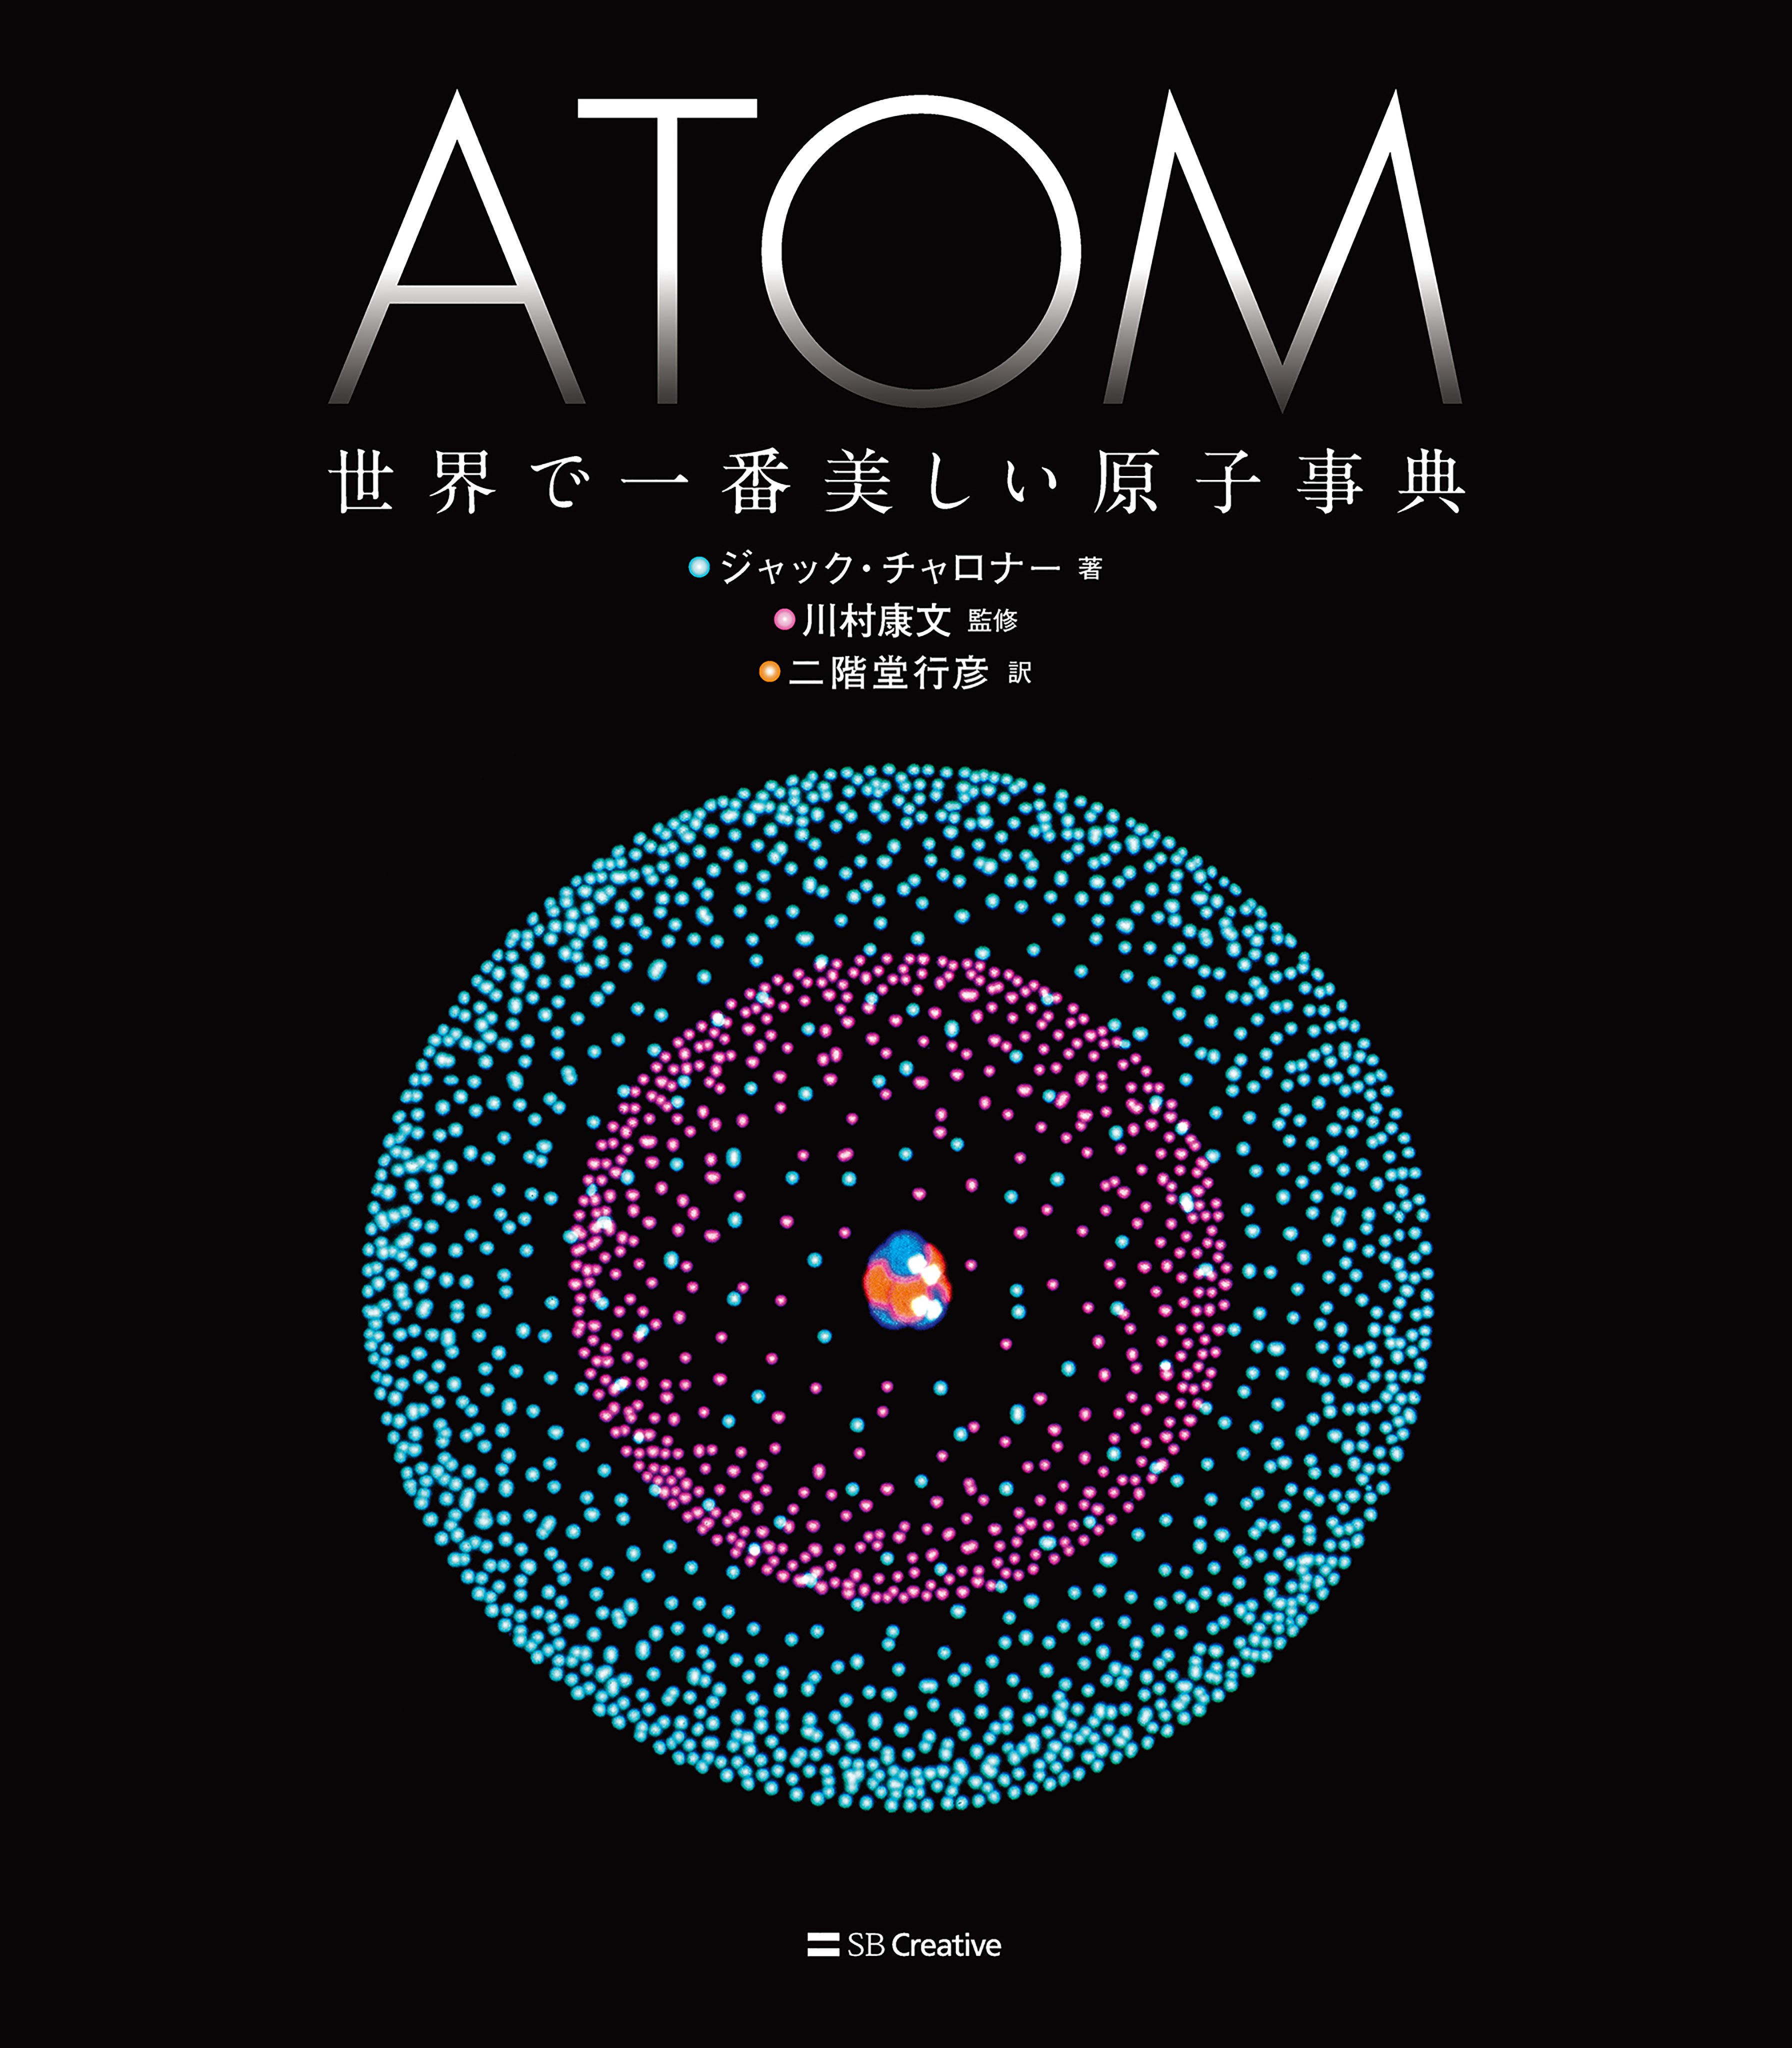 ATOM 世界で一番美しい原子事典 - ジャック・チャロナー/川村康文